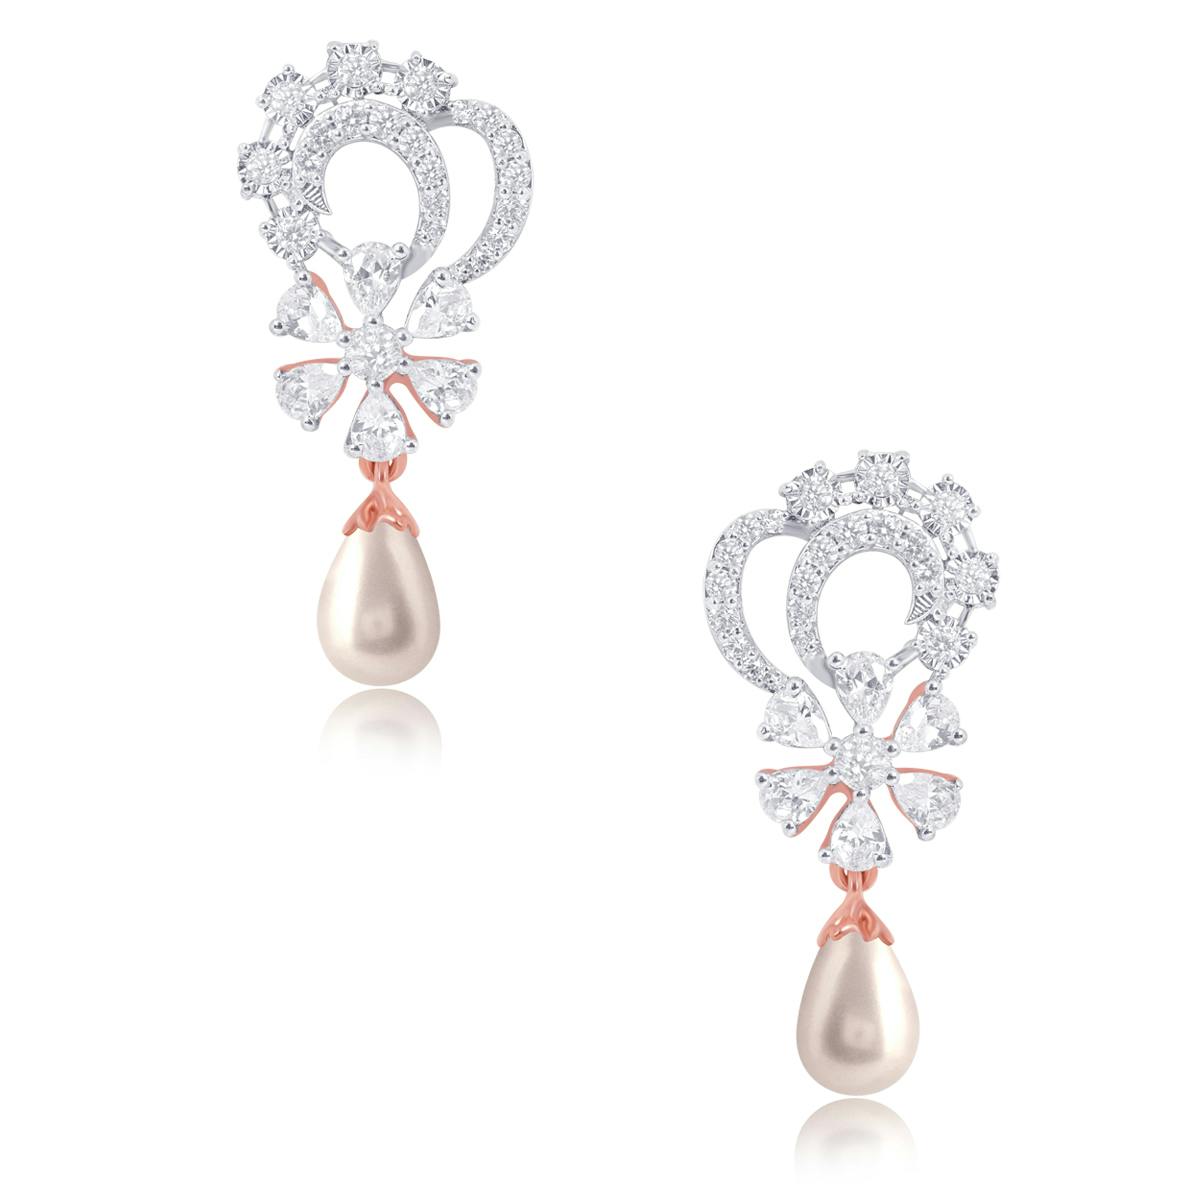 Dizzy pearl earrings